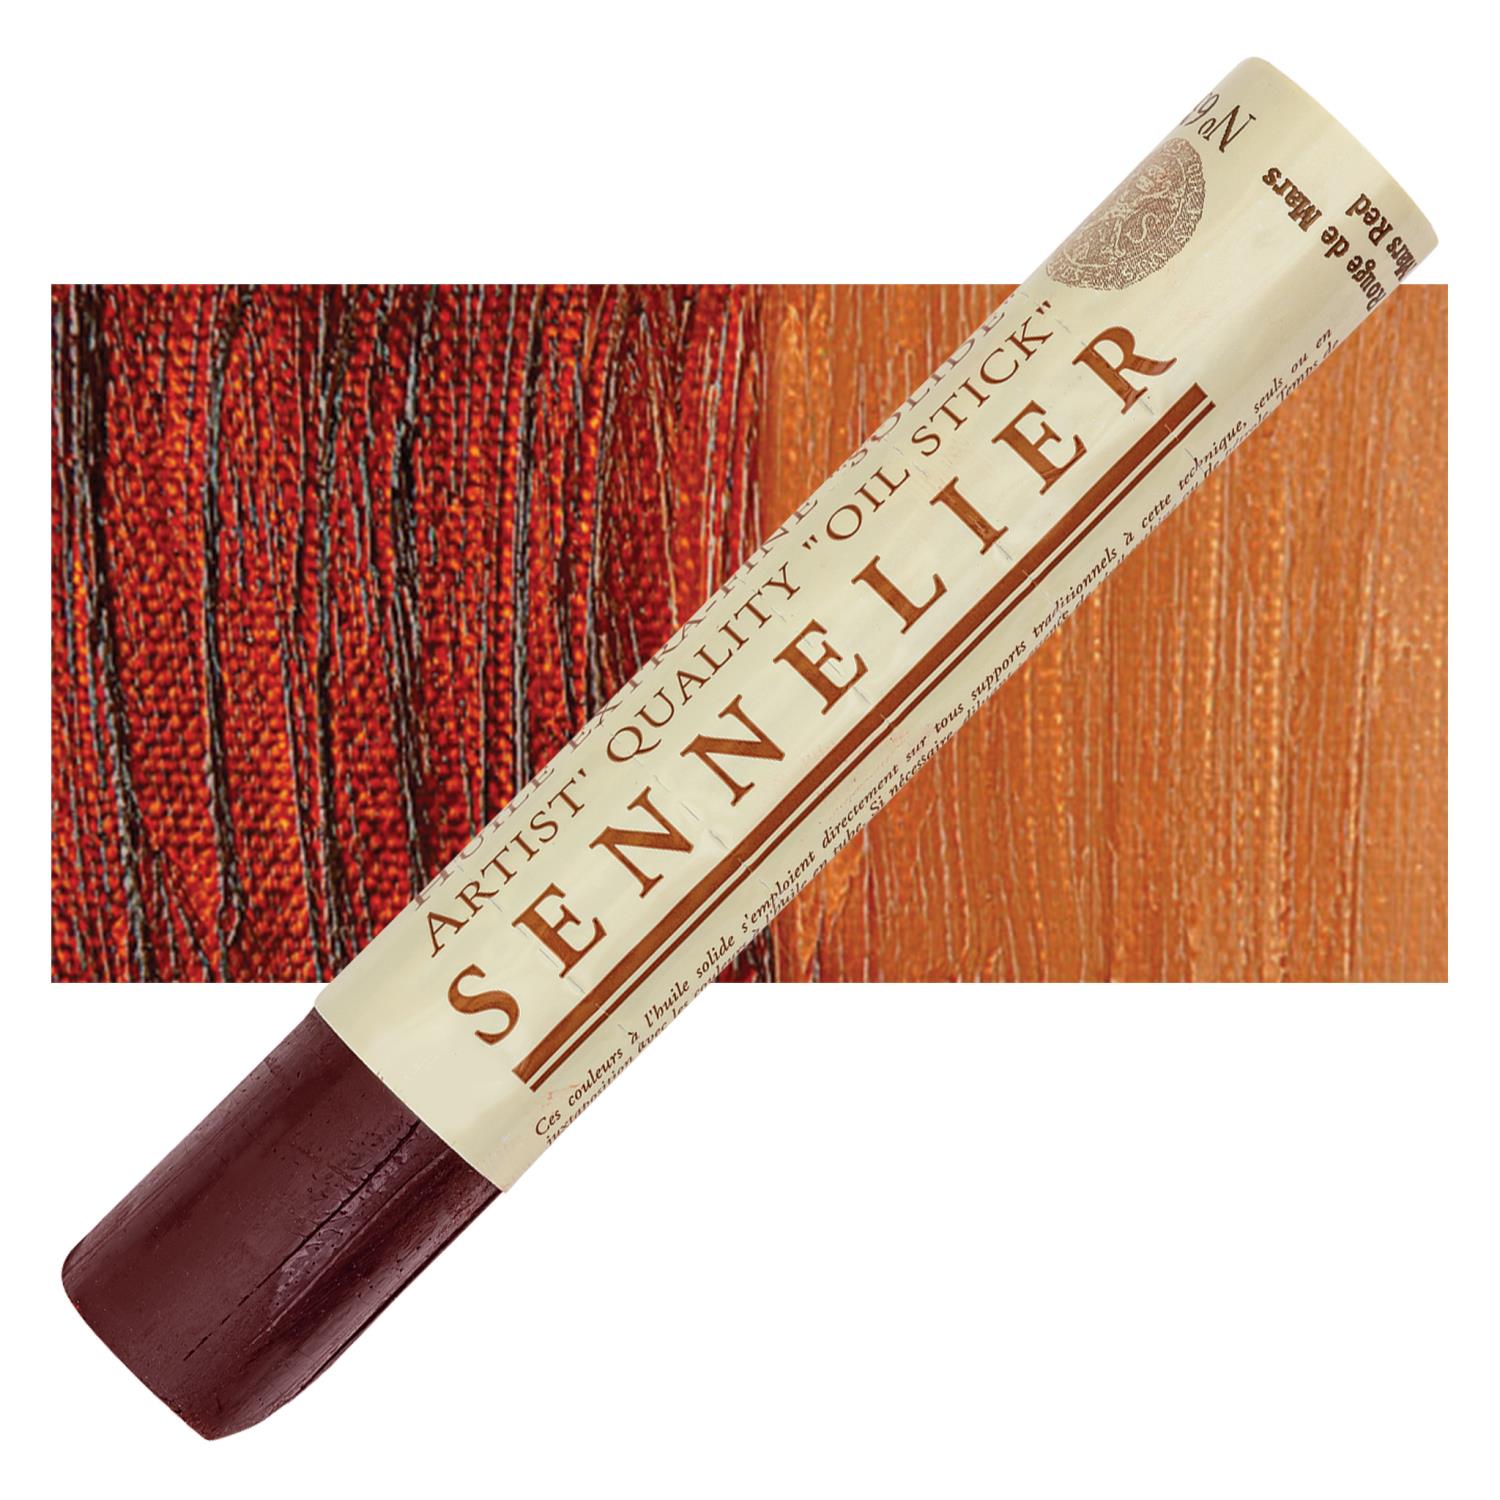 Sennelier Artist Oil Stick 38ml - 631 Mars Red S1 utgår